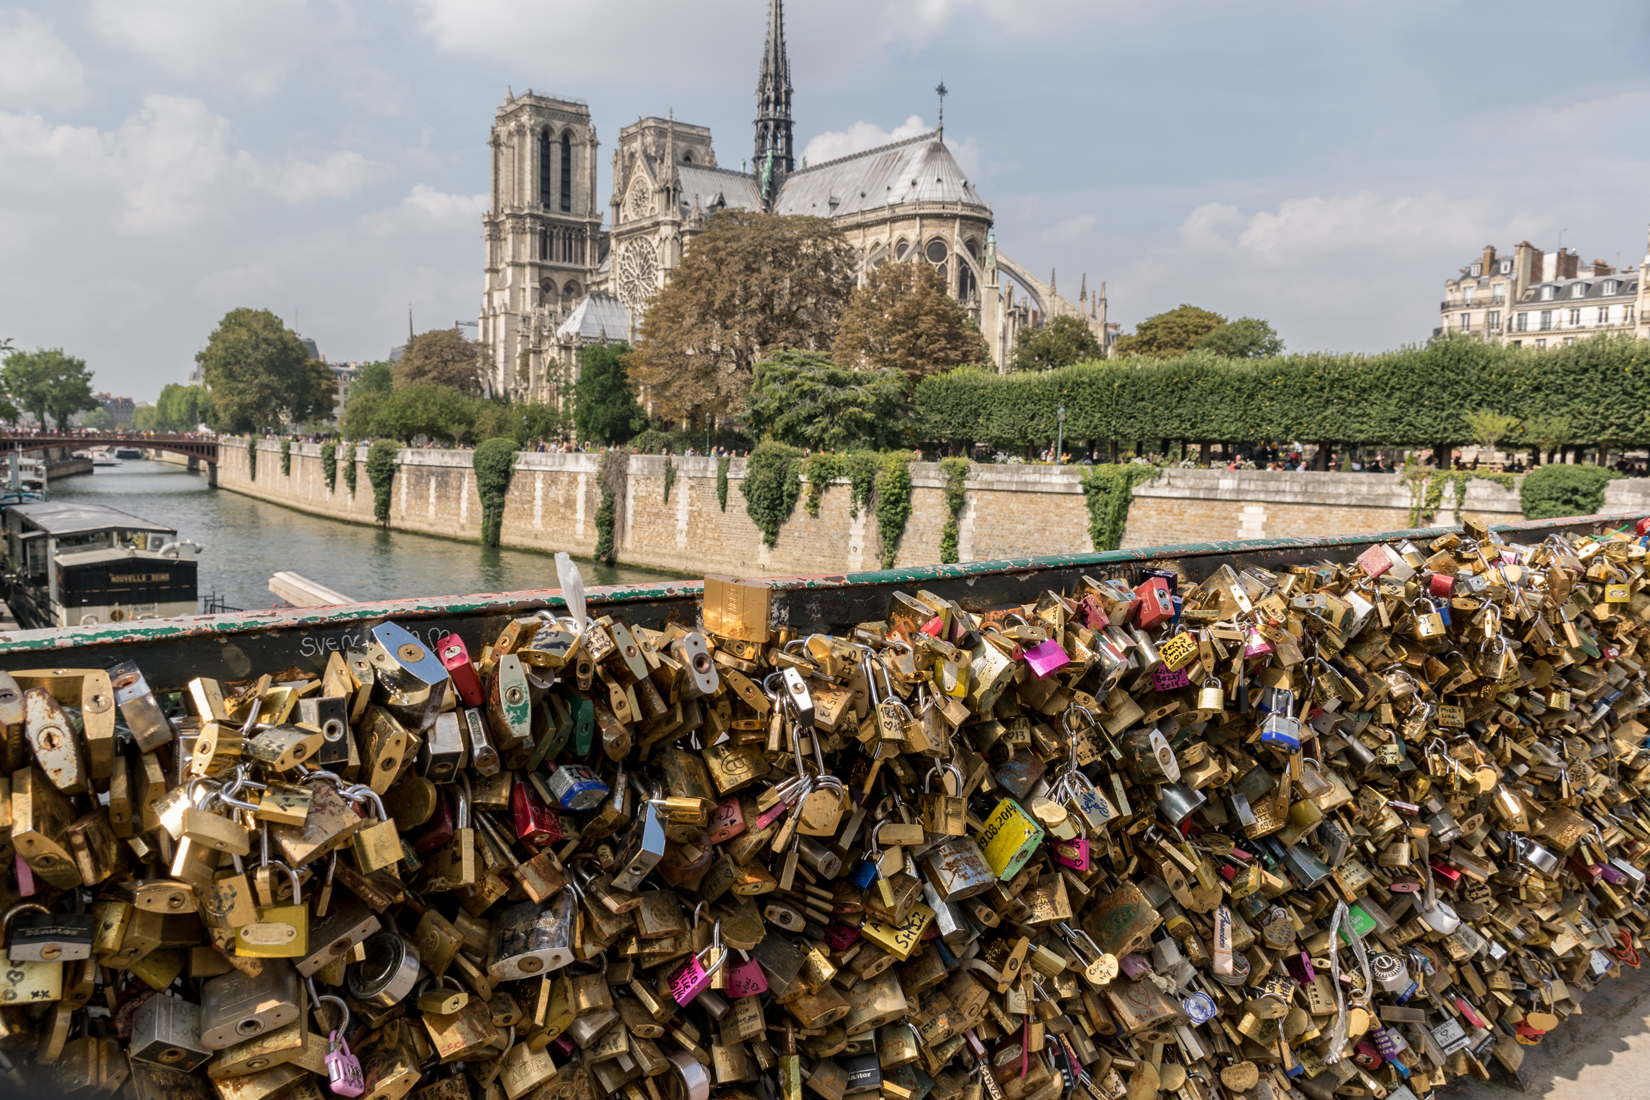 The Pont de l'Archevêché bridge over the Seine covered in thousands of love locks